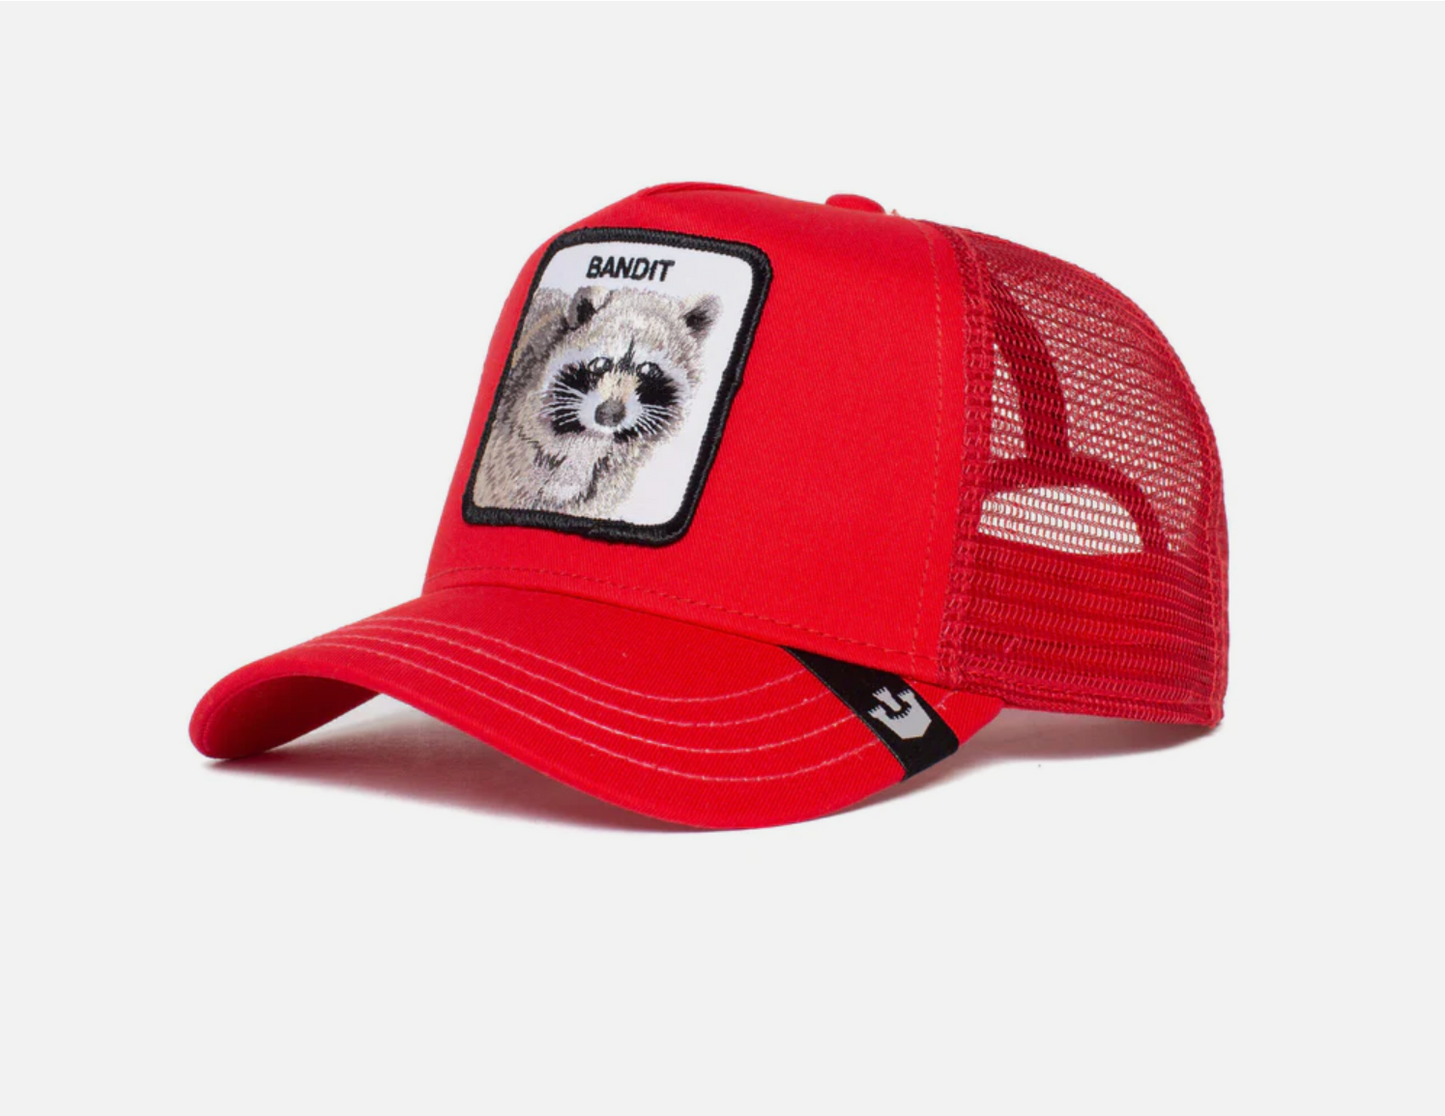 The Bandit Red Trucker Hat - Goorin Bros